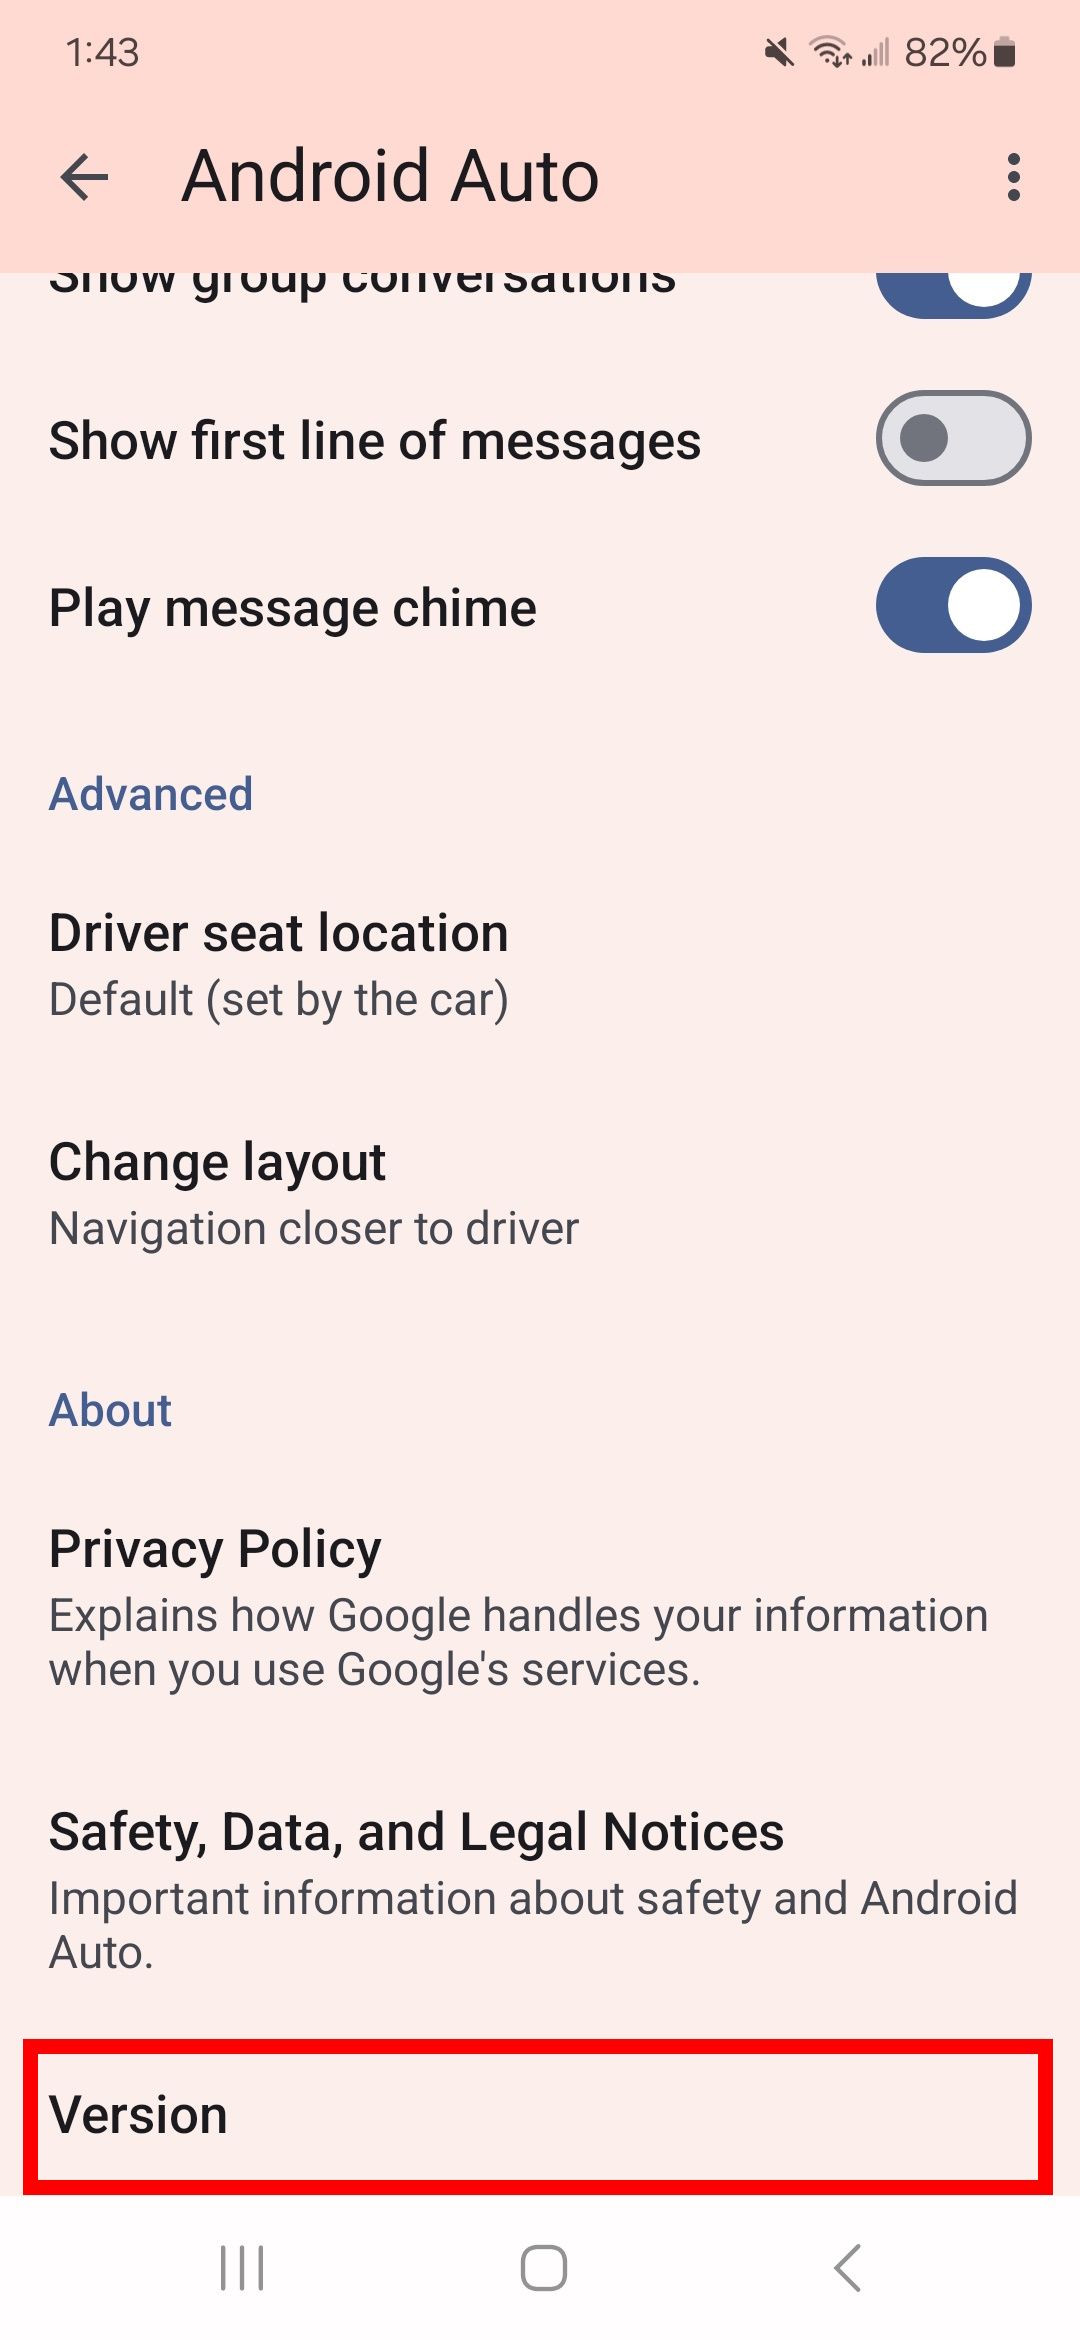 contorno de retângulo vermelho sobre a versão no aplicativo Android Auto